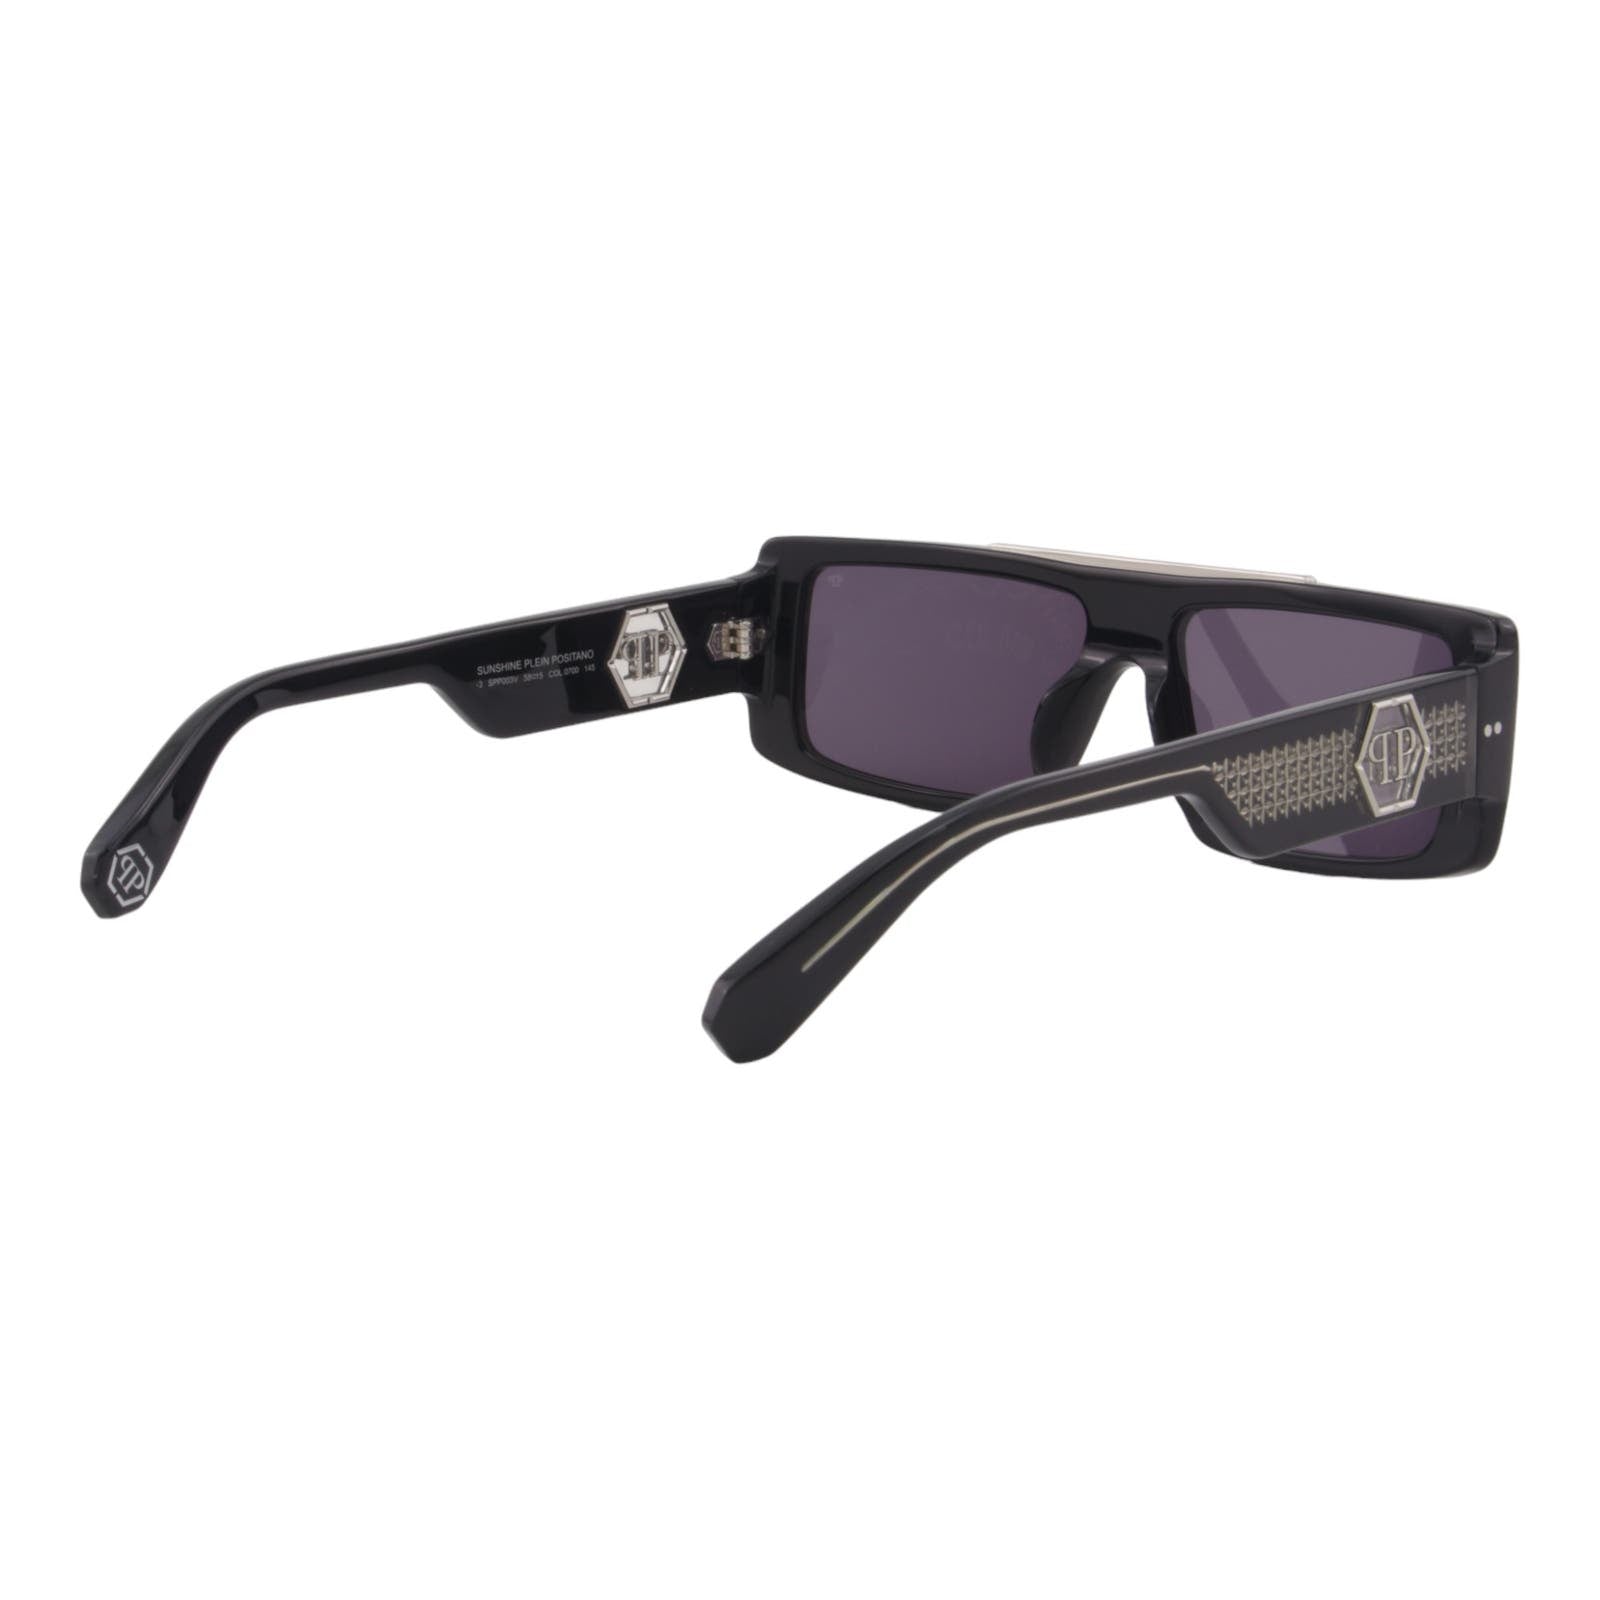 Men Designer Sunglasses SPP003V-0700 Slim Black Rectangular Frame